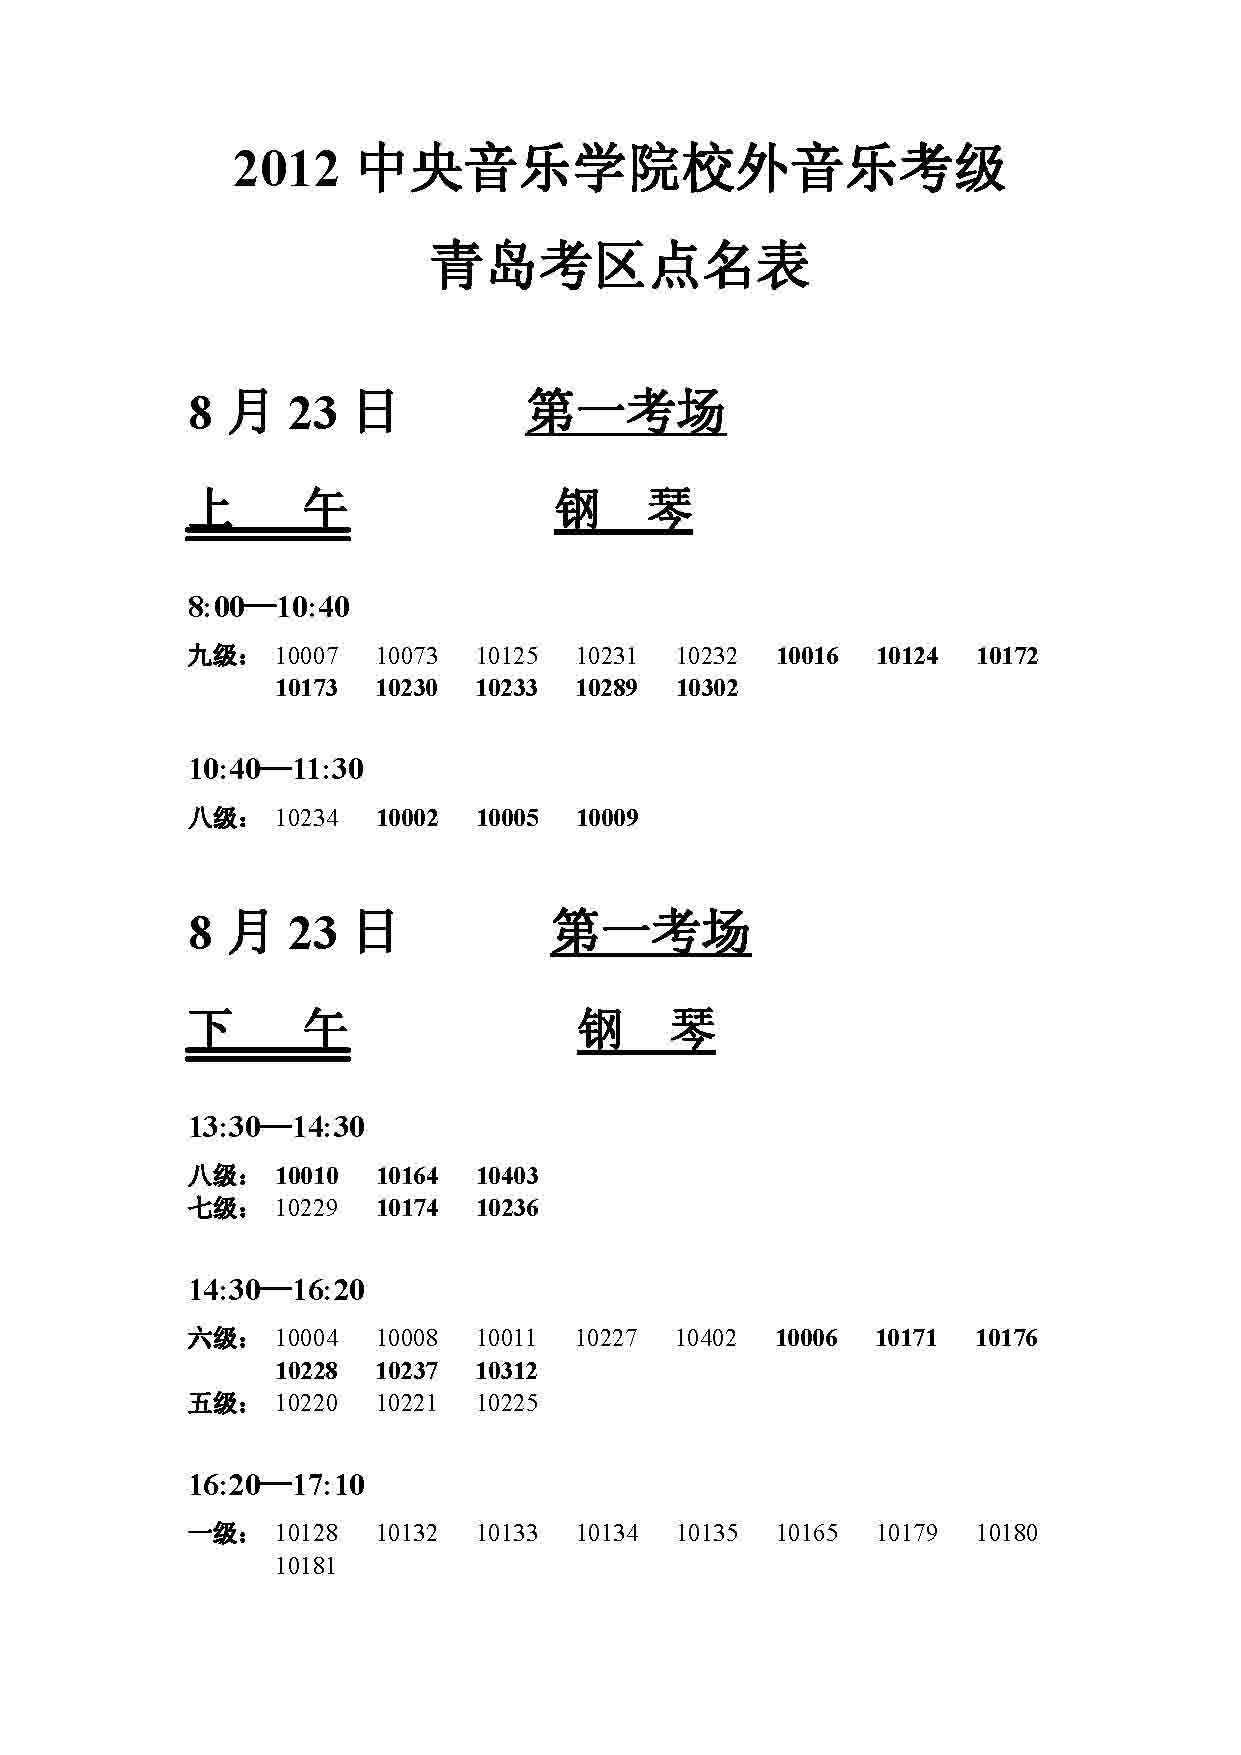 2012年中央音乐学院考级青岛考区考级点名表